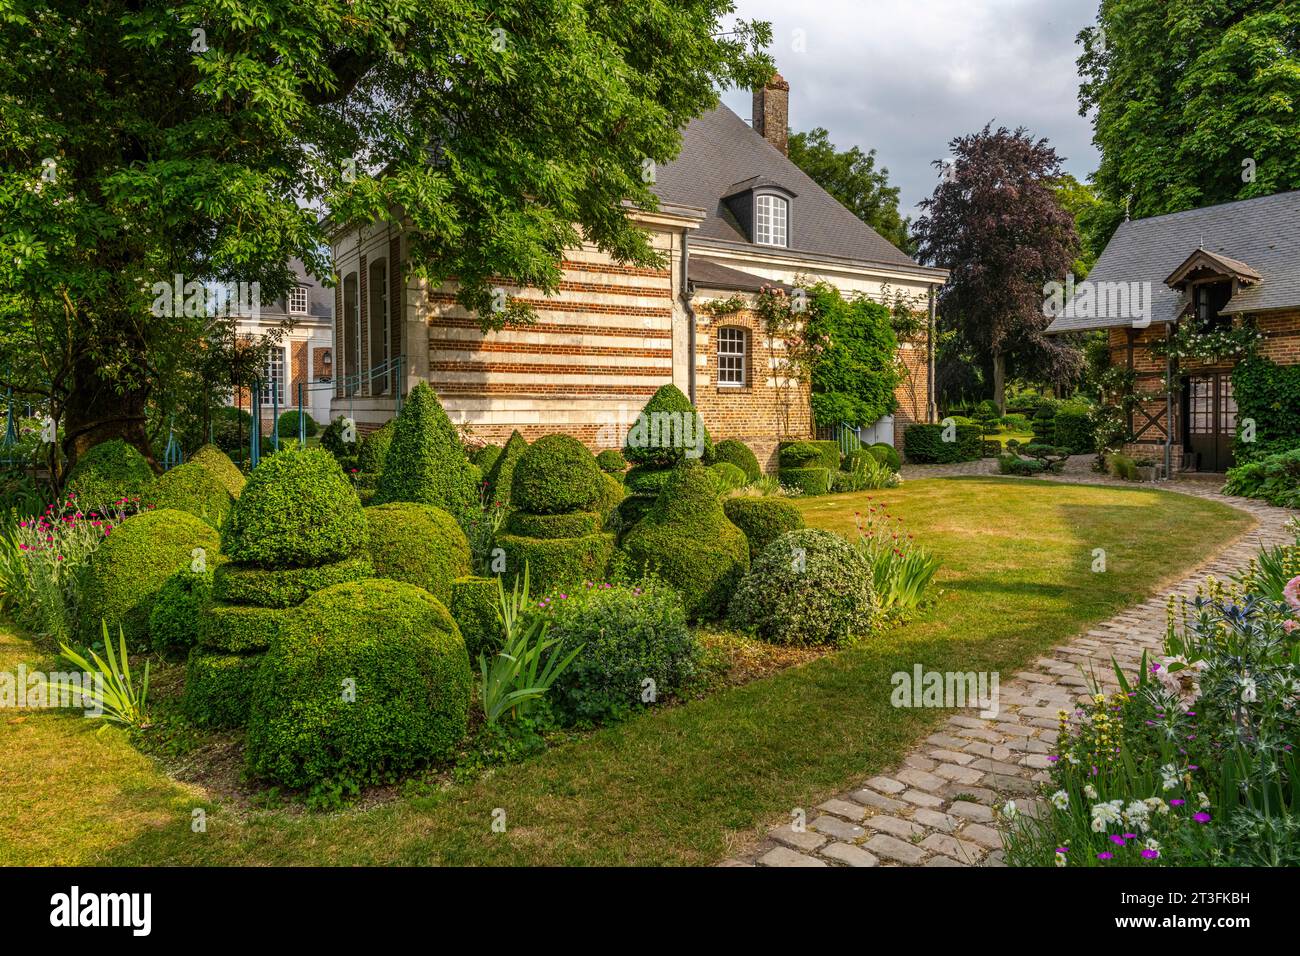 France, Somme, Maizicourt, Les jardins de Maizicourt, French garden, English garden, Contemporary garden, Vegetable garden Stock Photo